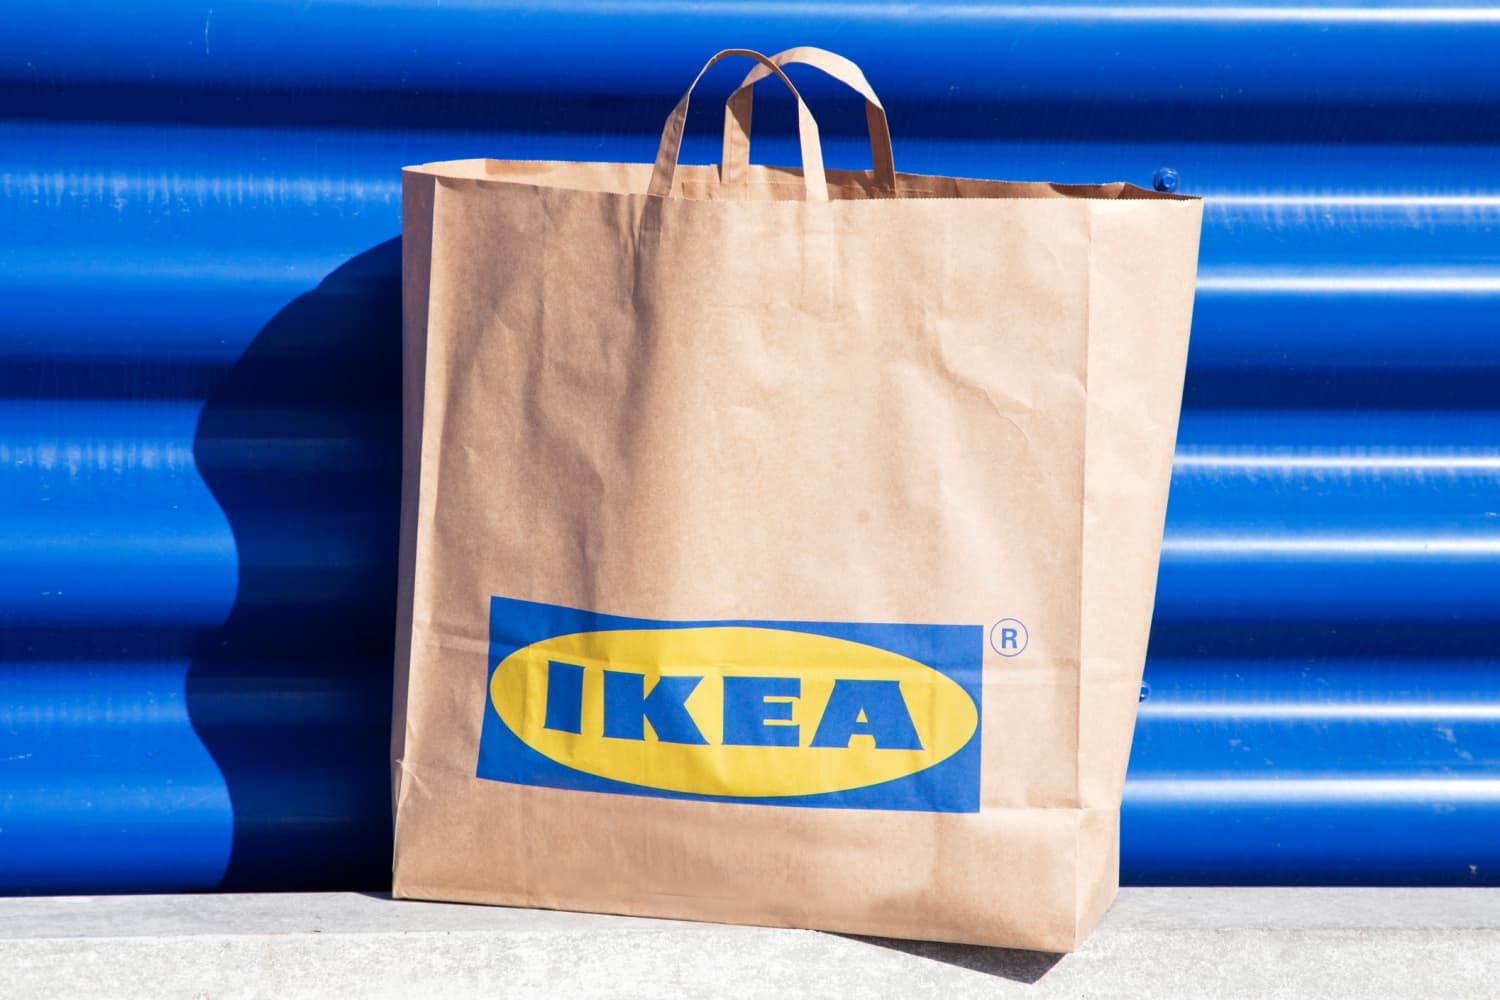 As-Is च्या पलीकडे: IKEA मध्ये आणखी पैसे कसे वाचवायचे